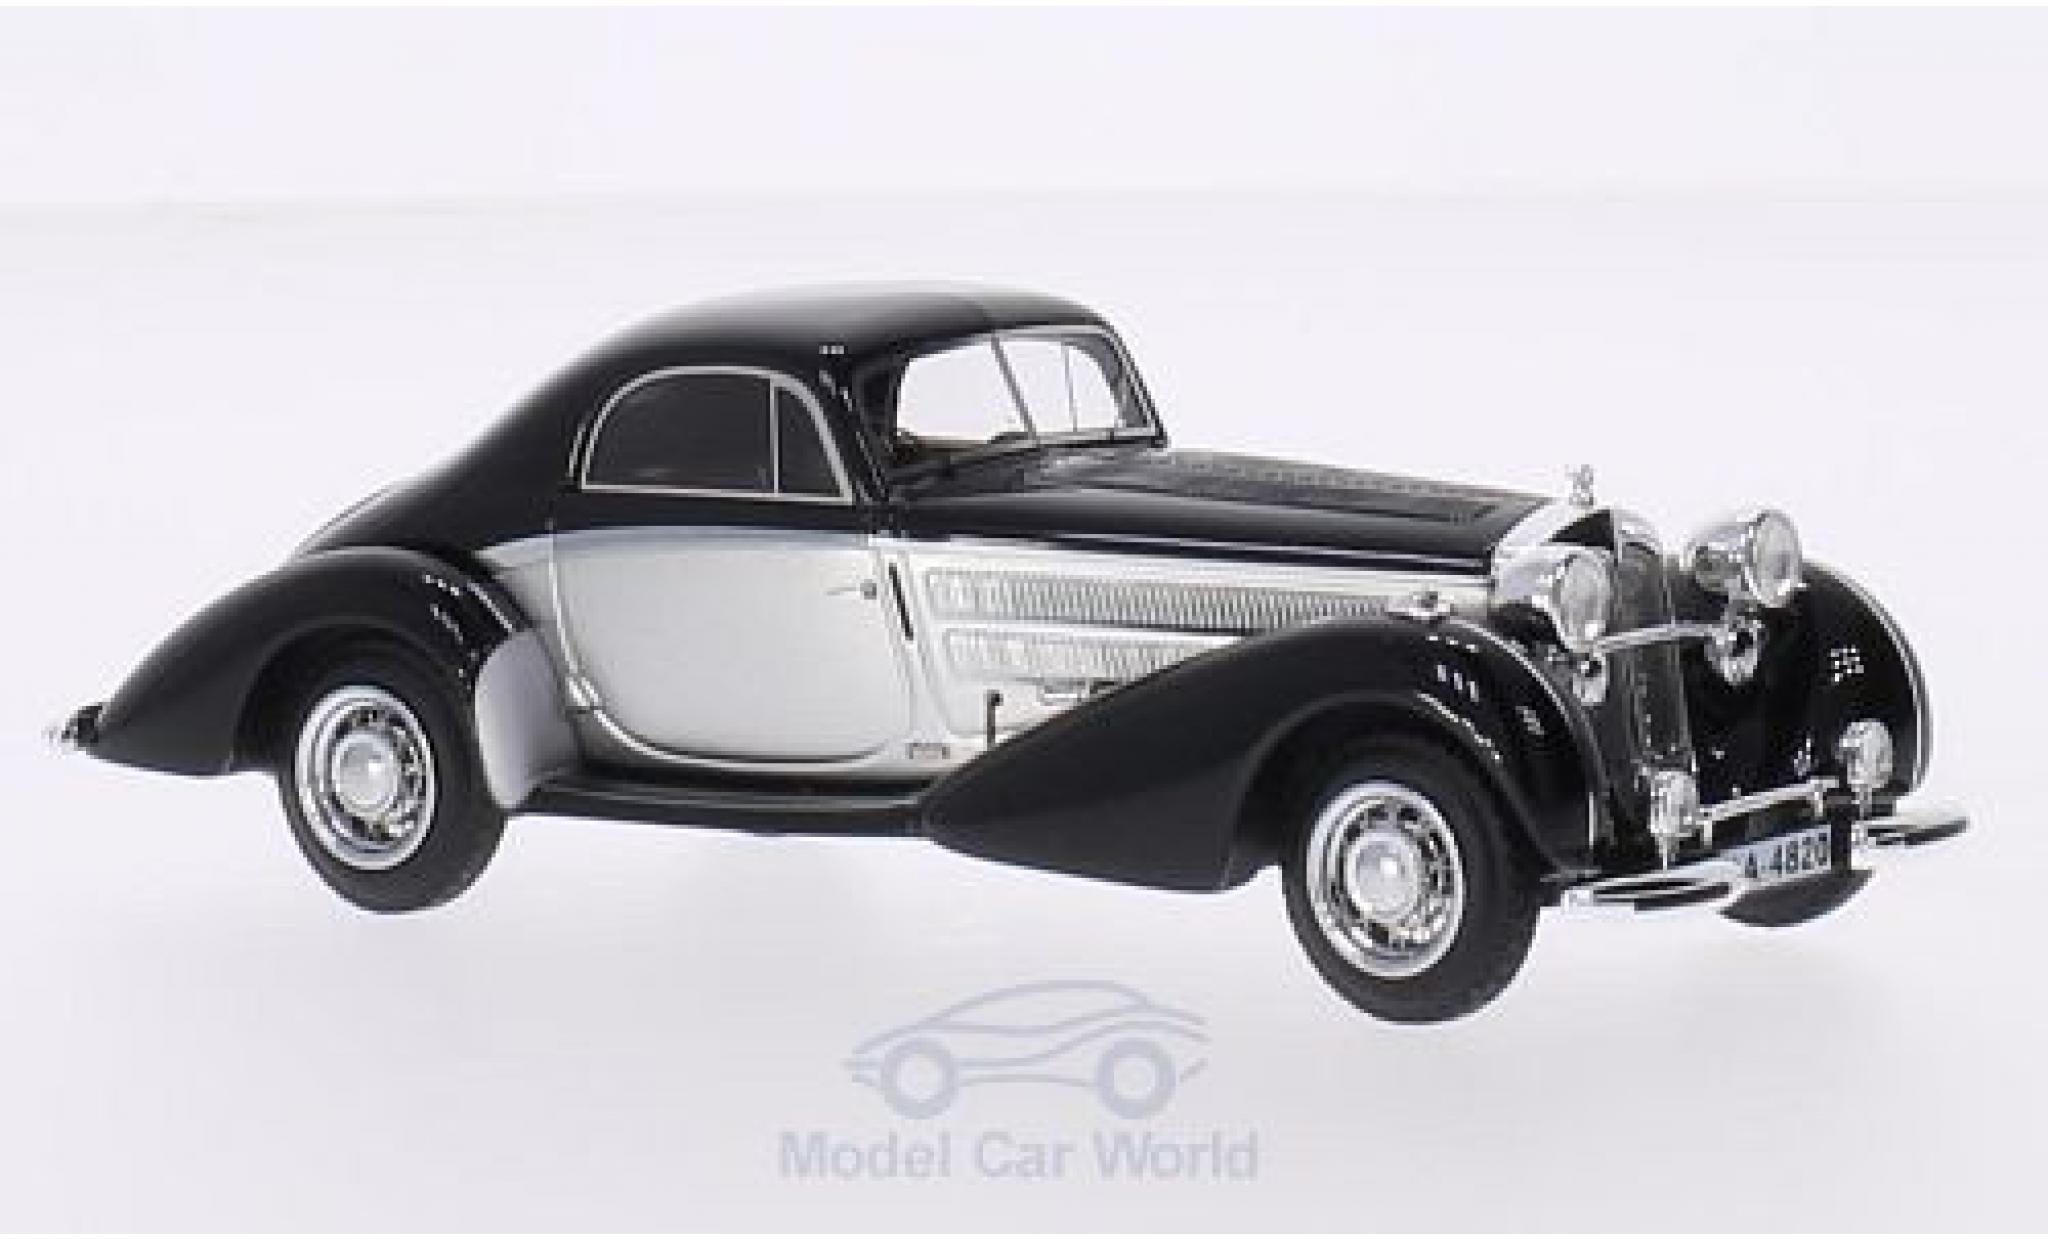 Horch 853 1/43 Neo Spezial-Coupe grise/noire 1937